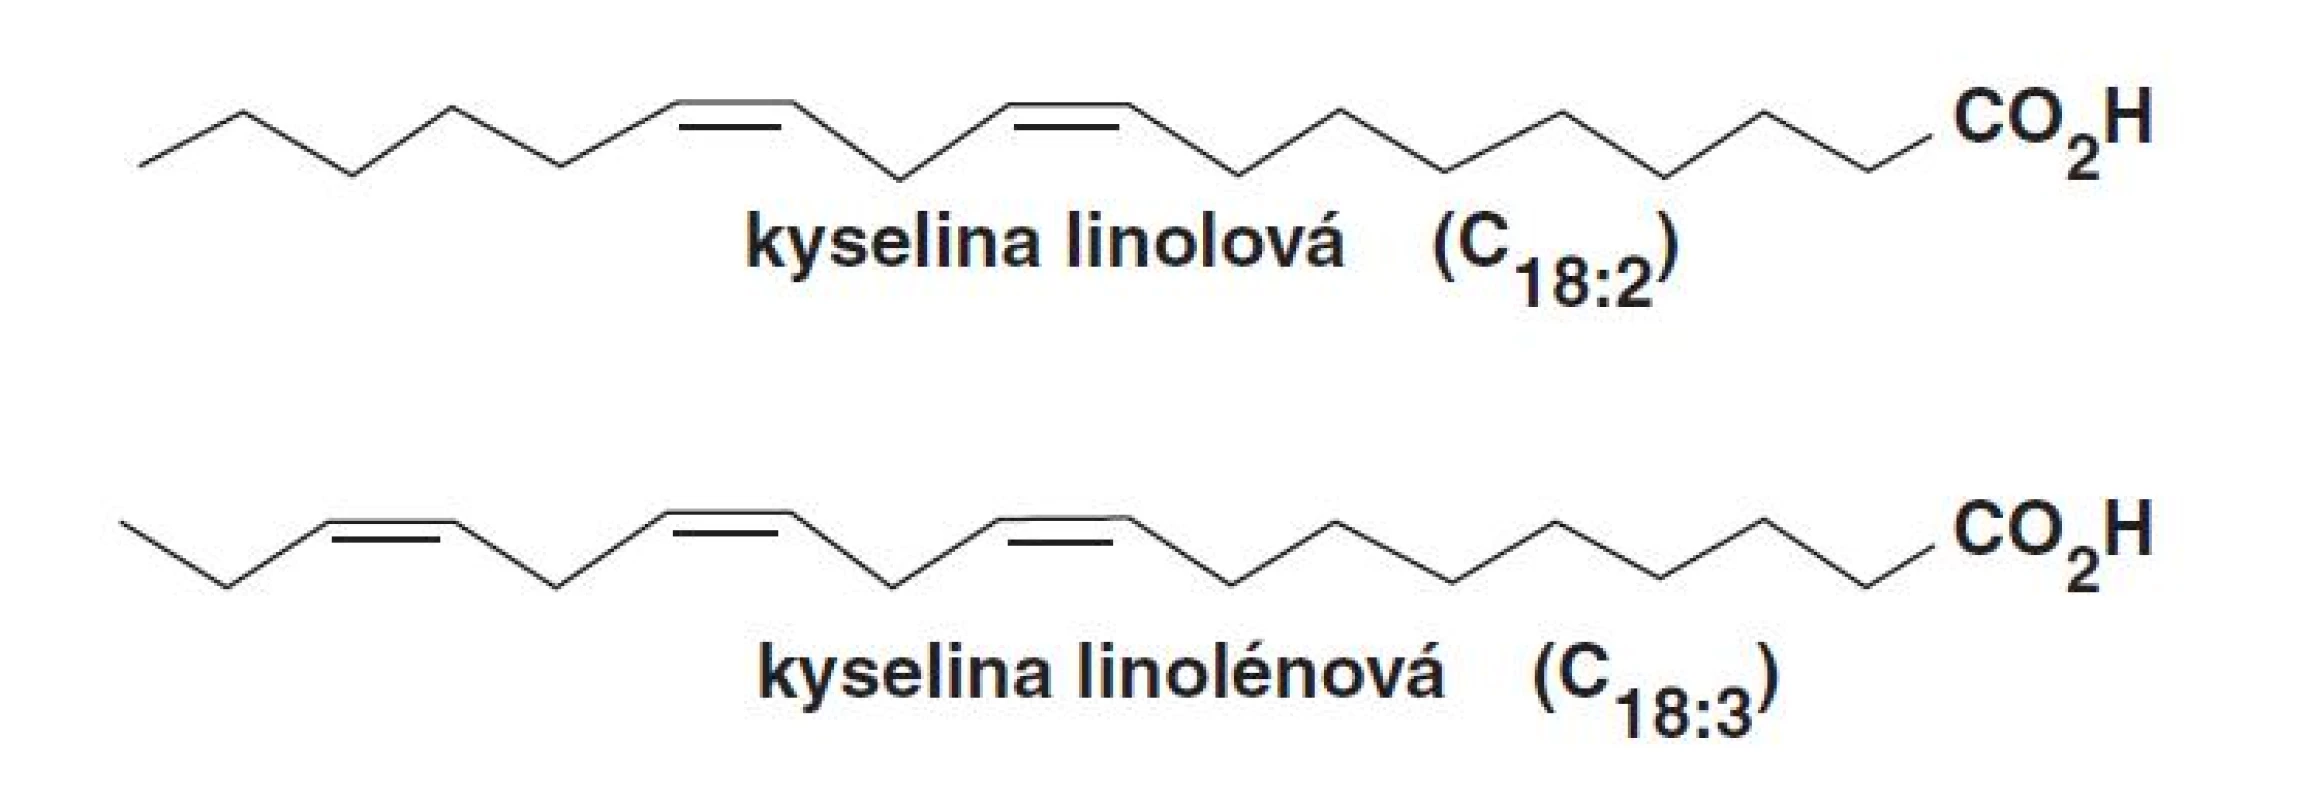 Substráty rastlinnej LOX: kyselina linolová a kyselina linolénová